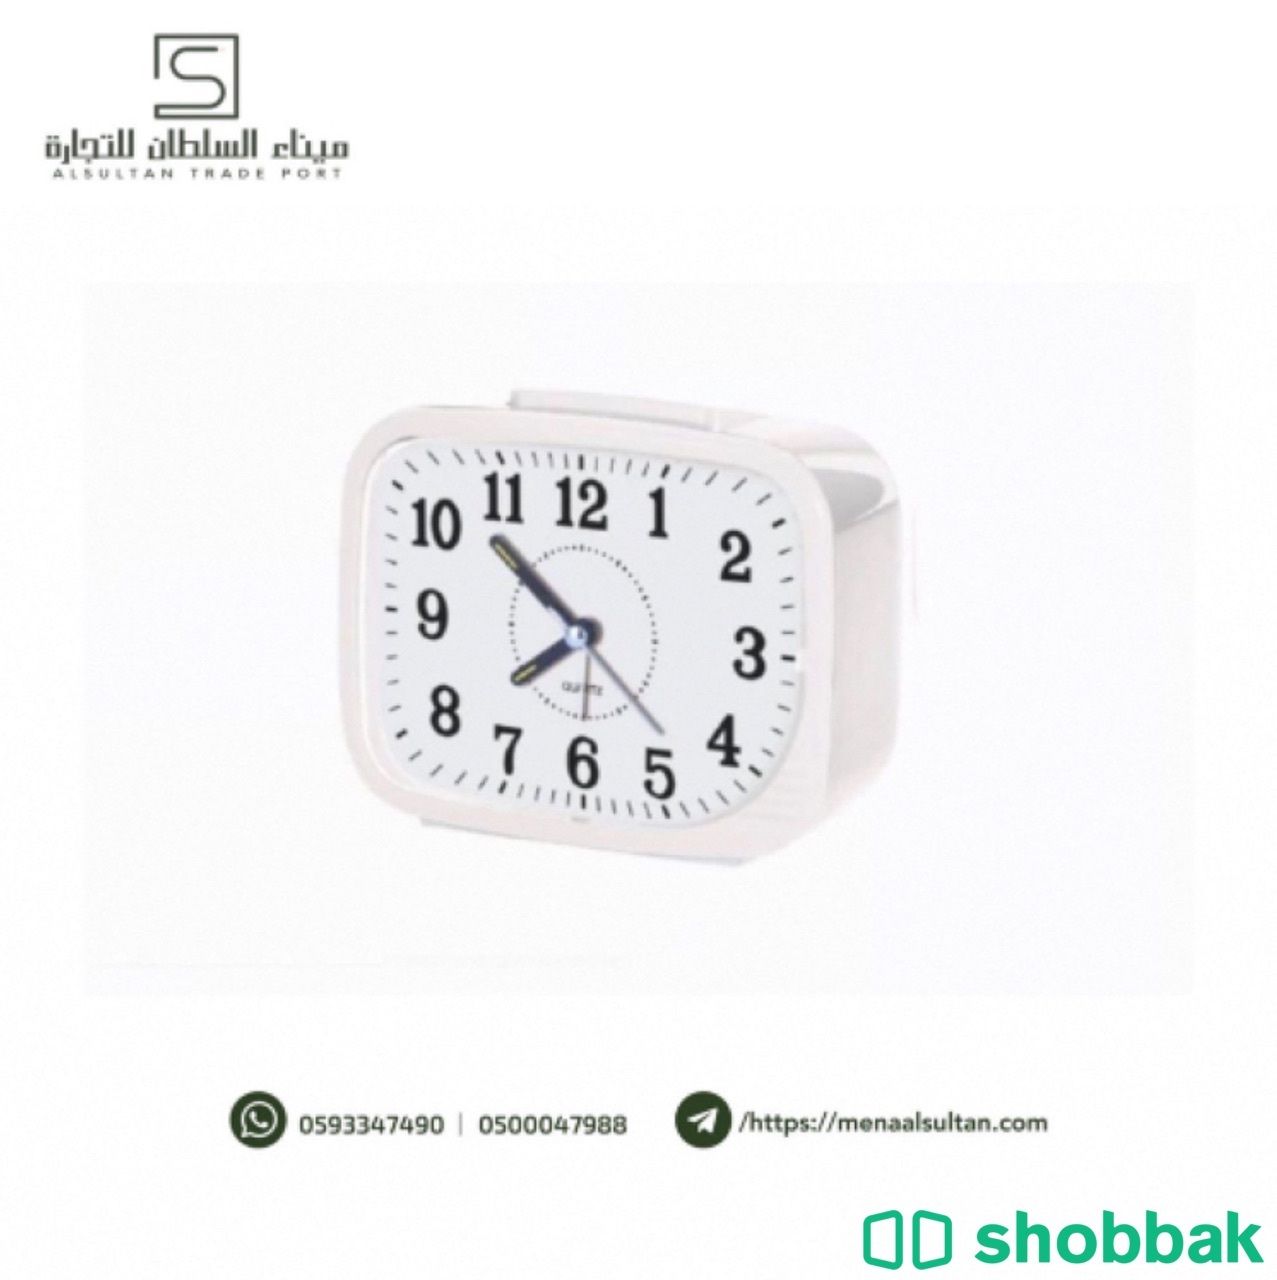 ساعة منبه من كراون Shobbak Saudi Arabia